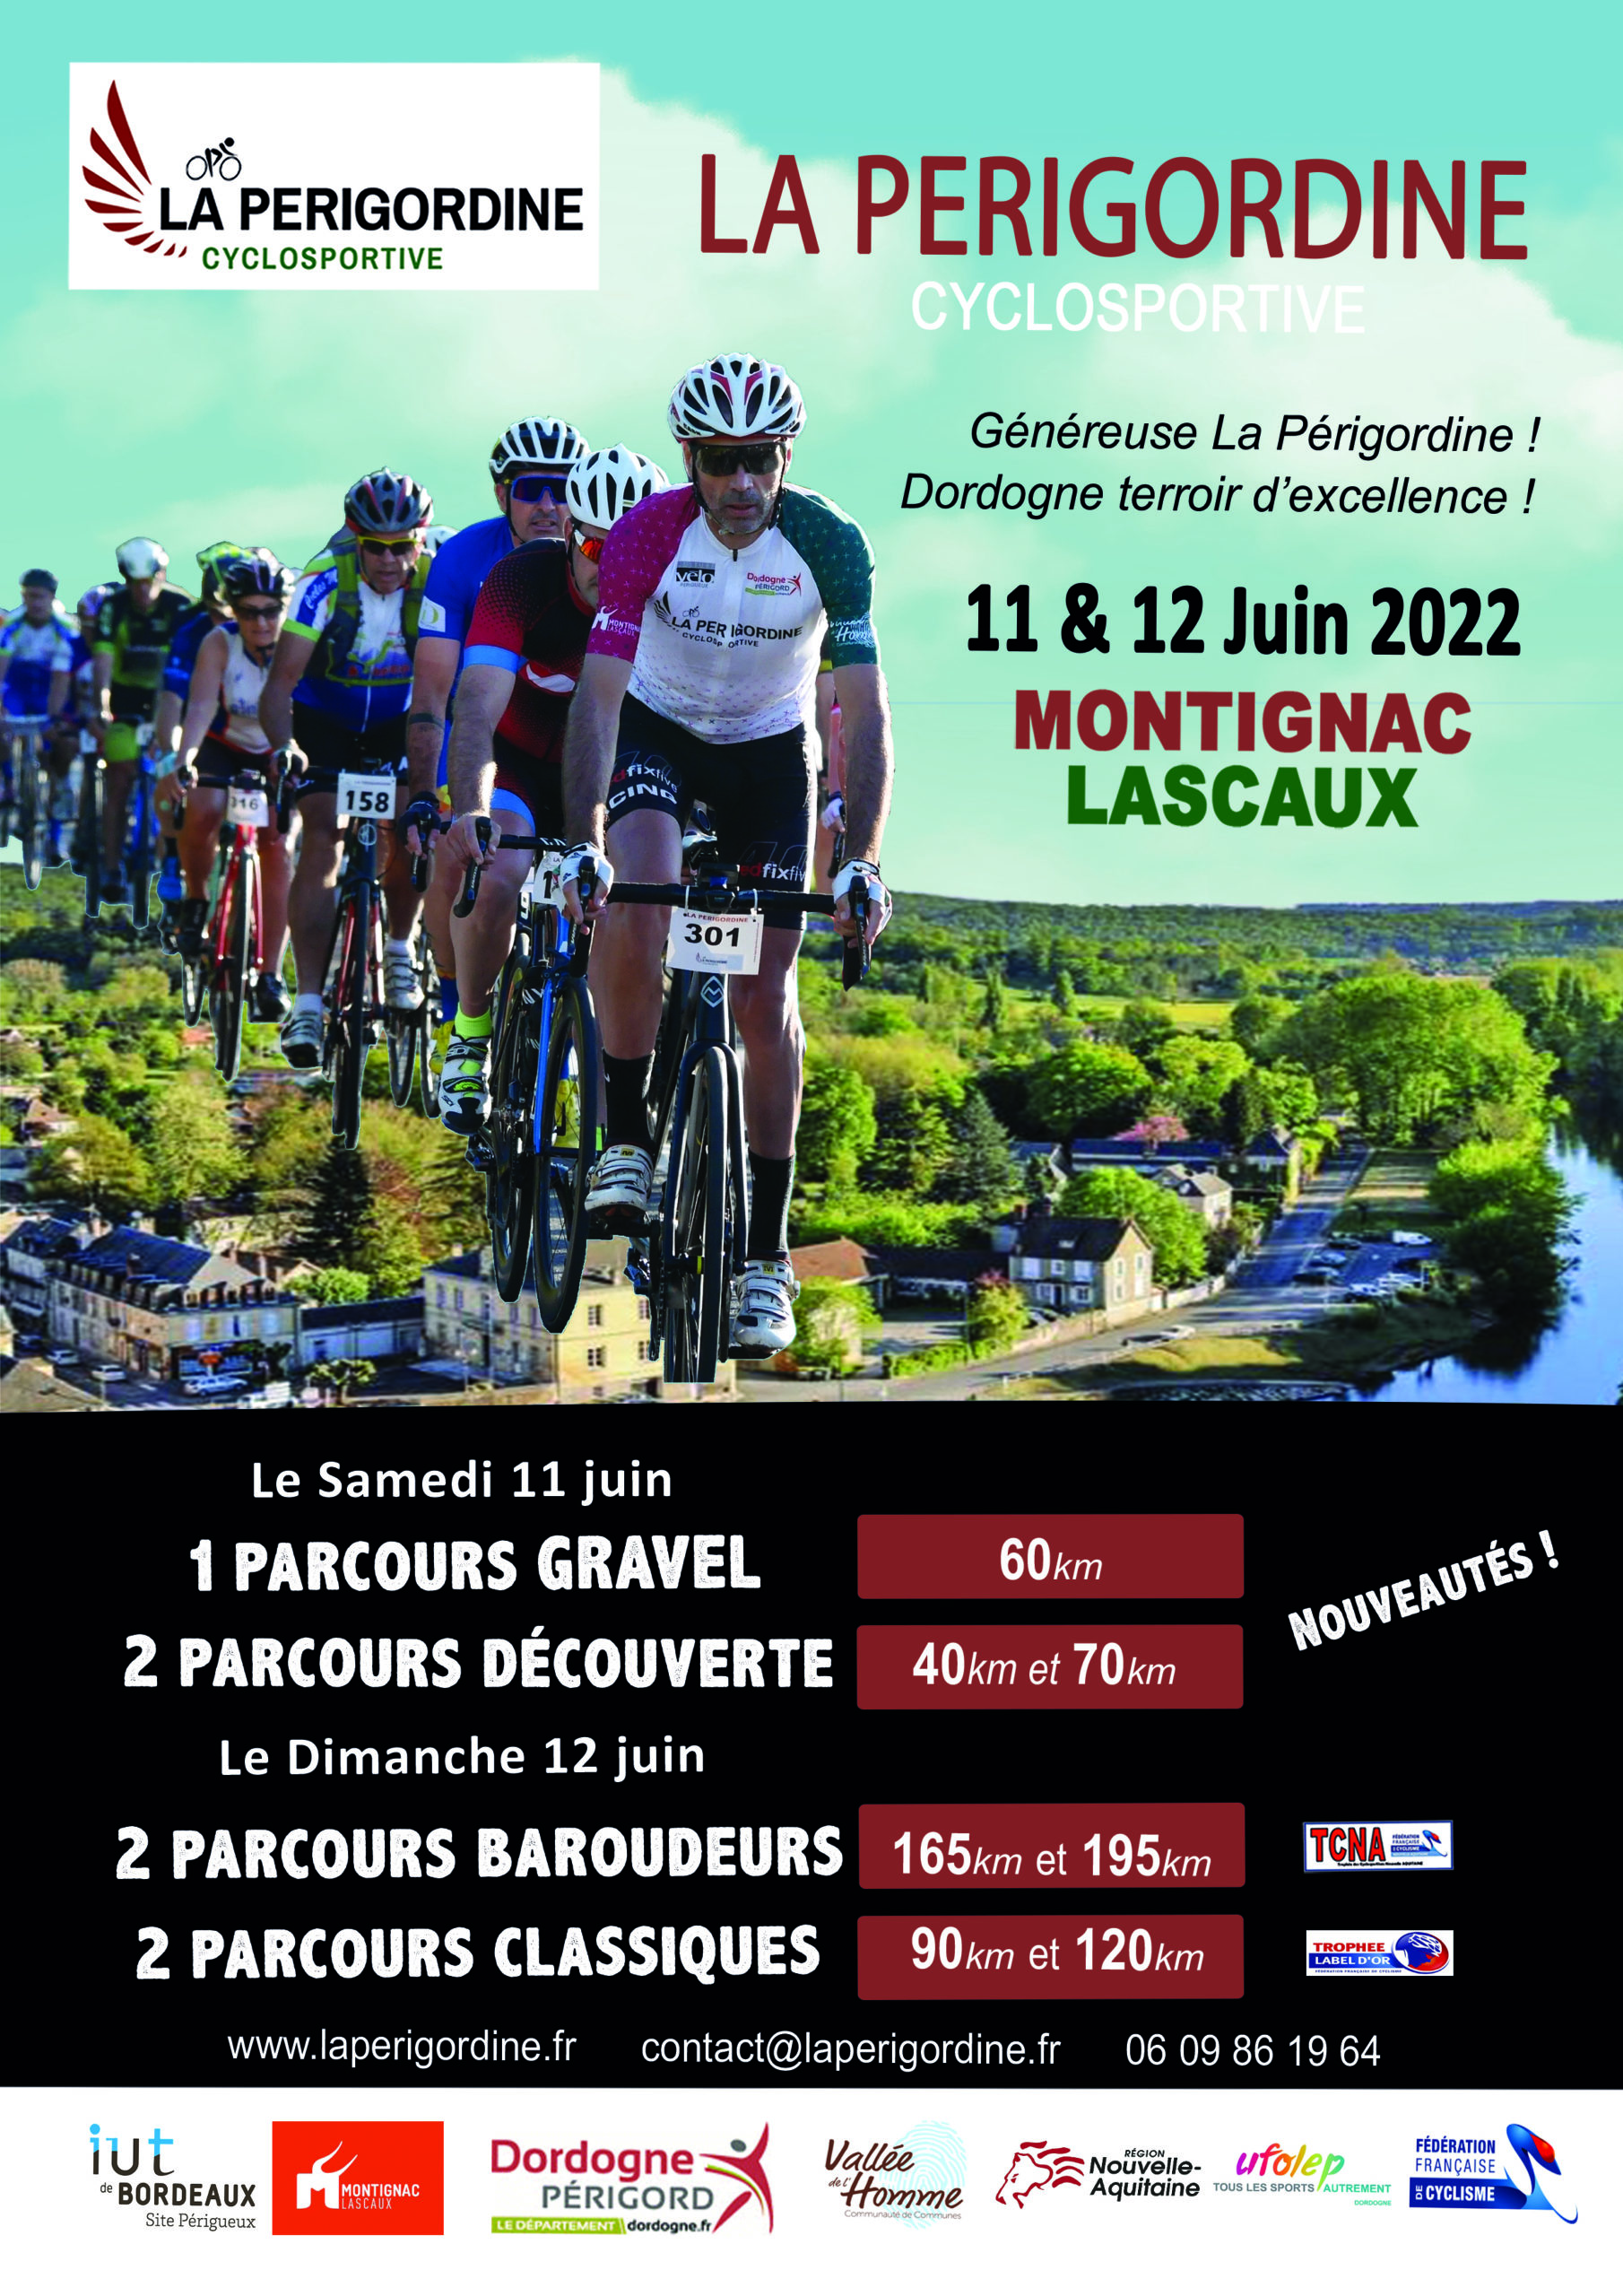 La Périgordine – cyclosportive